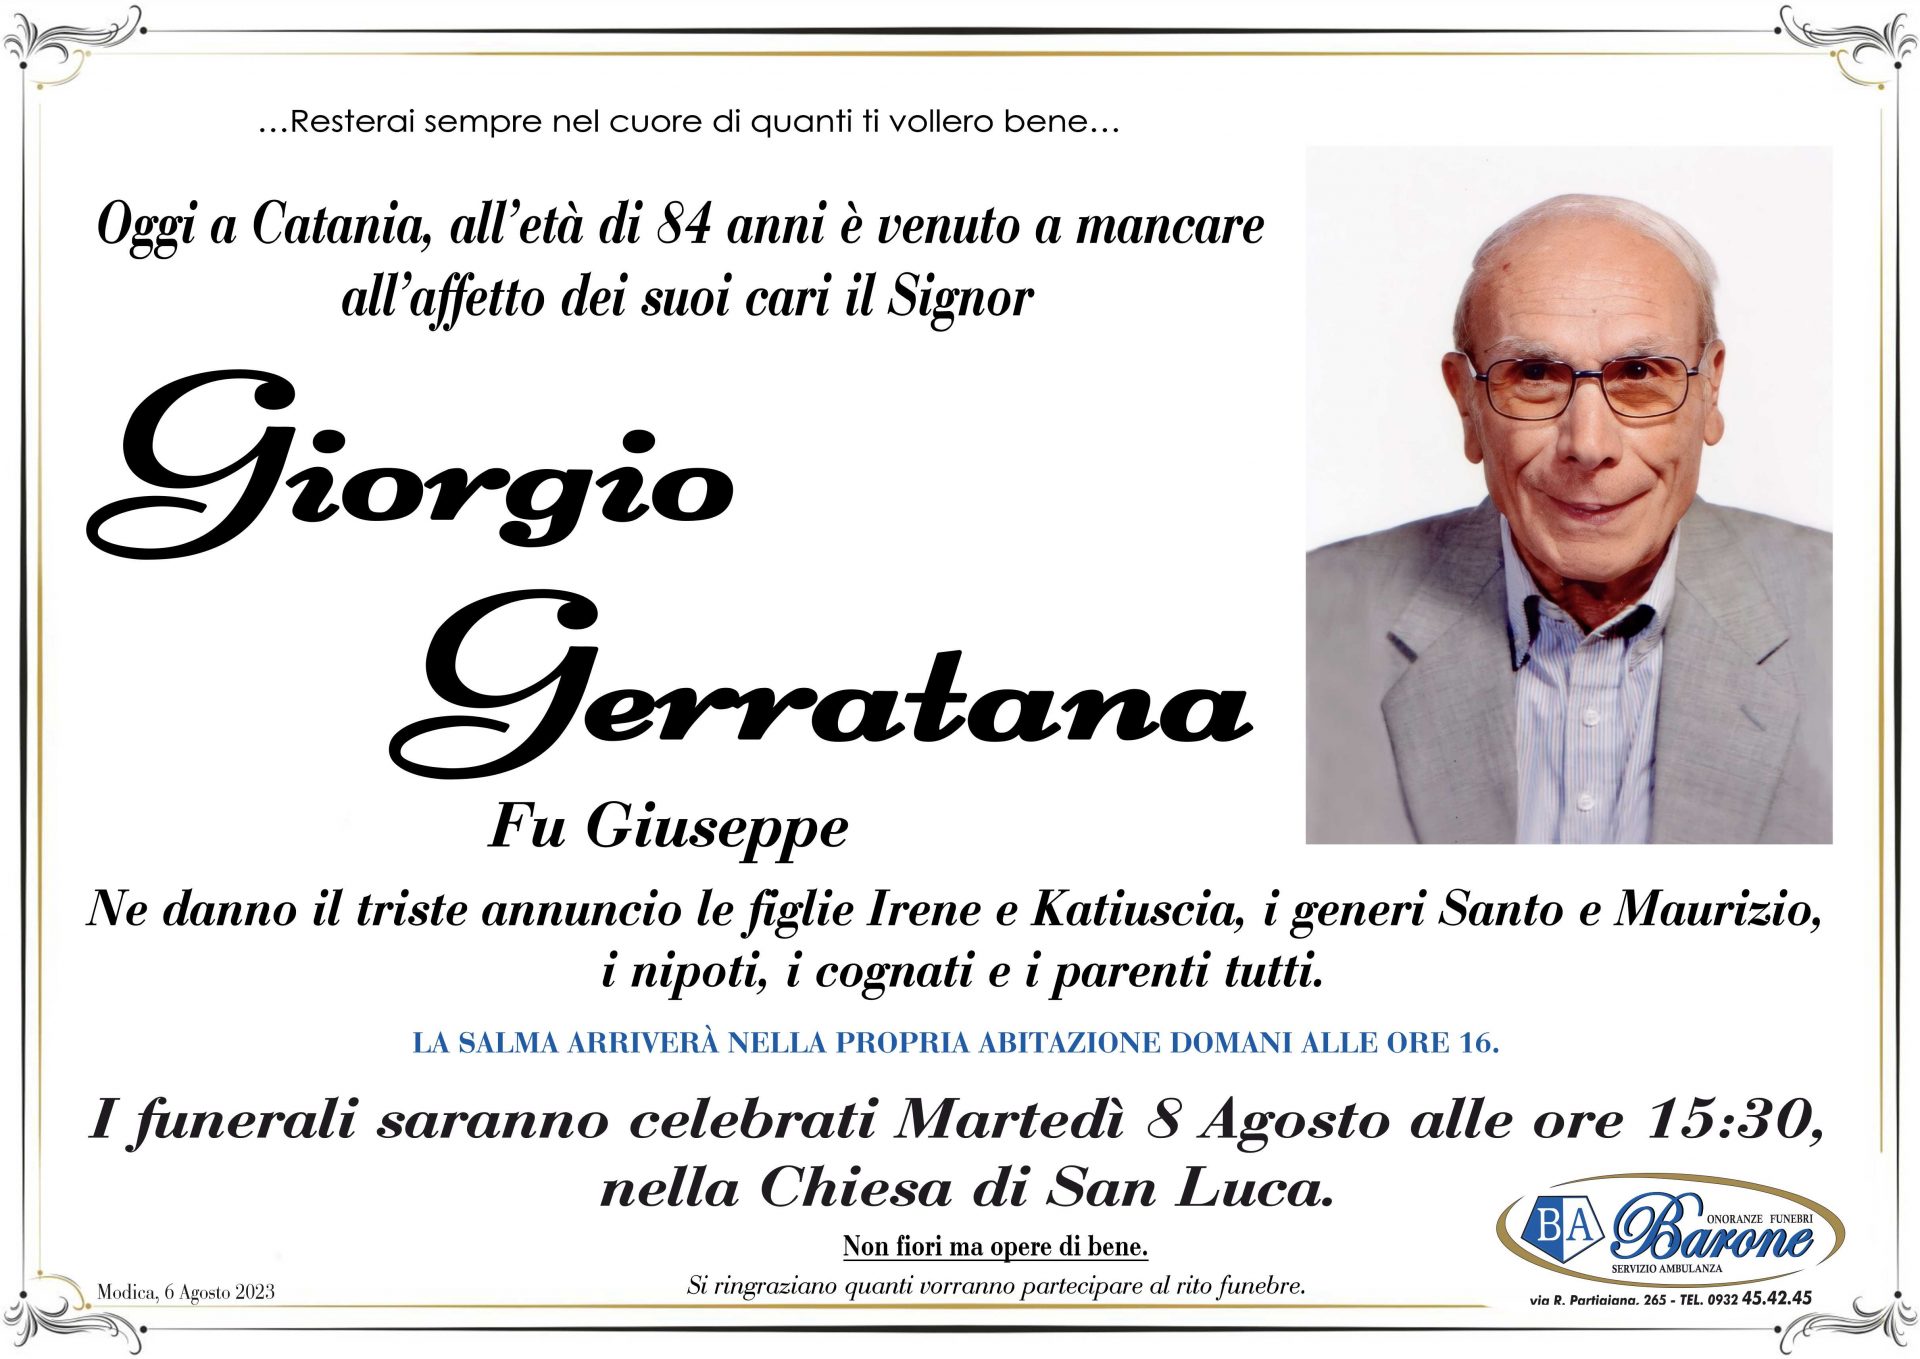 Giorgio Gerratana